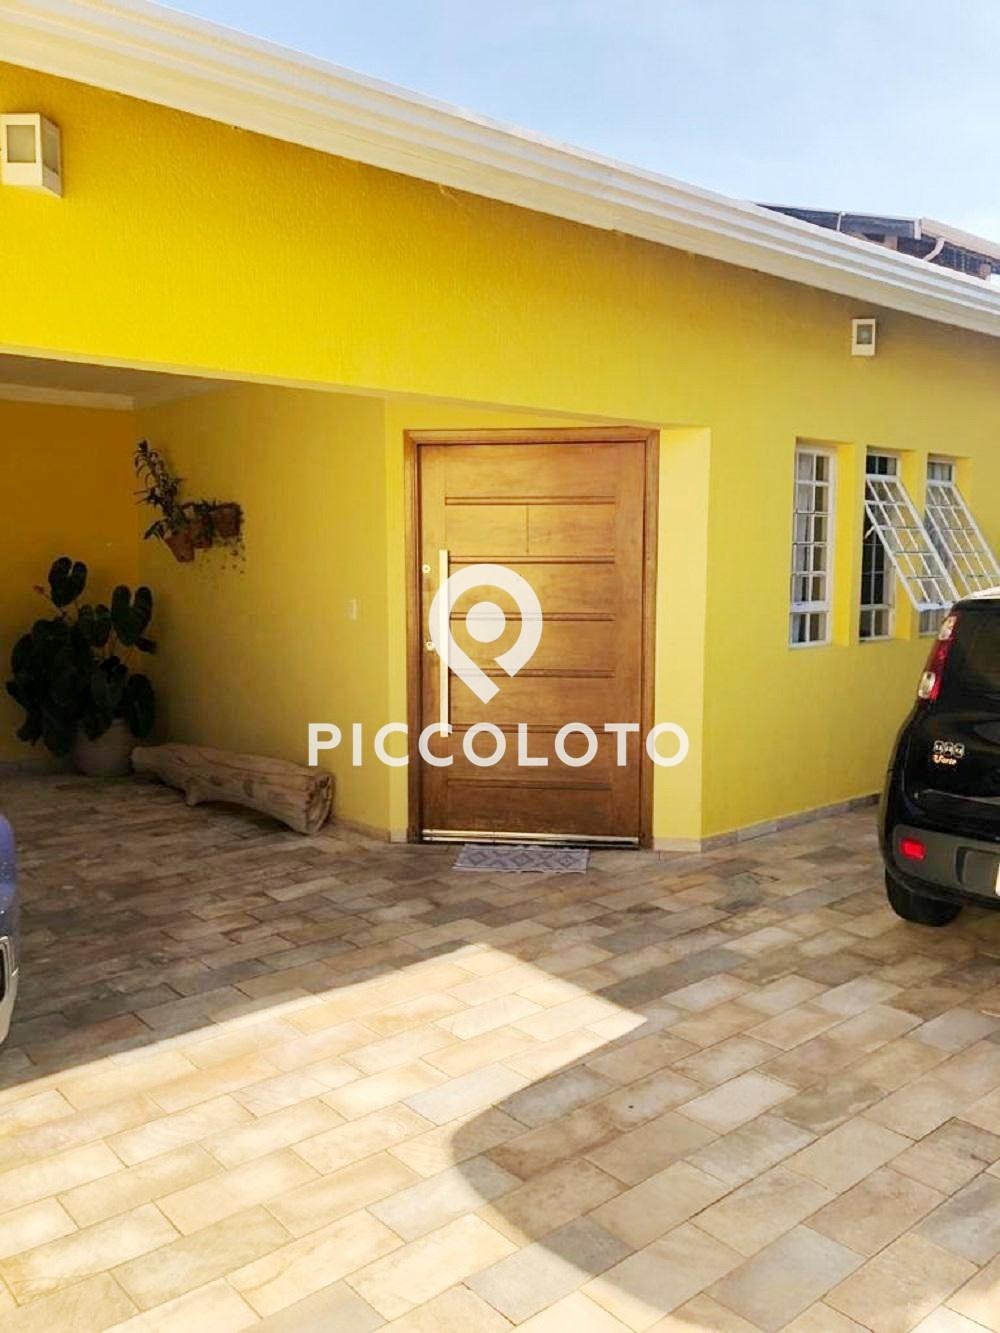 Piccoloto - Casa à venda no Parque Via Norte em Campinas